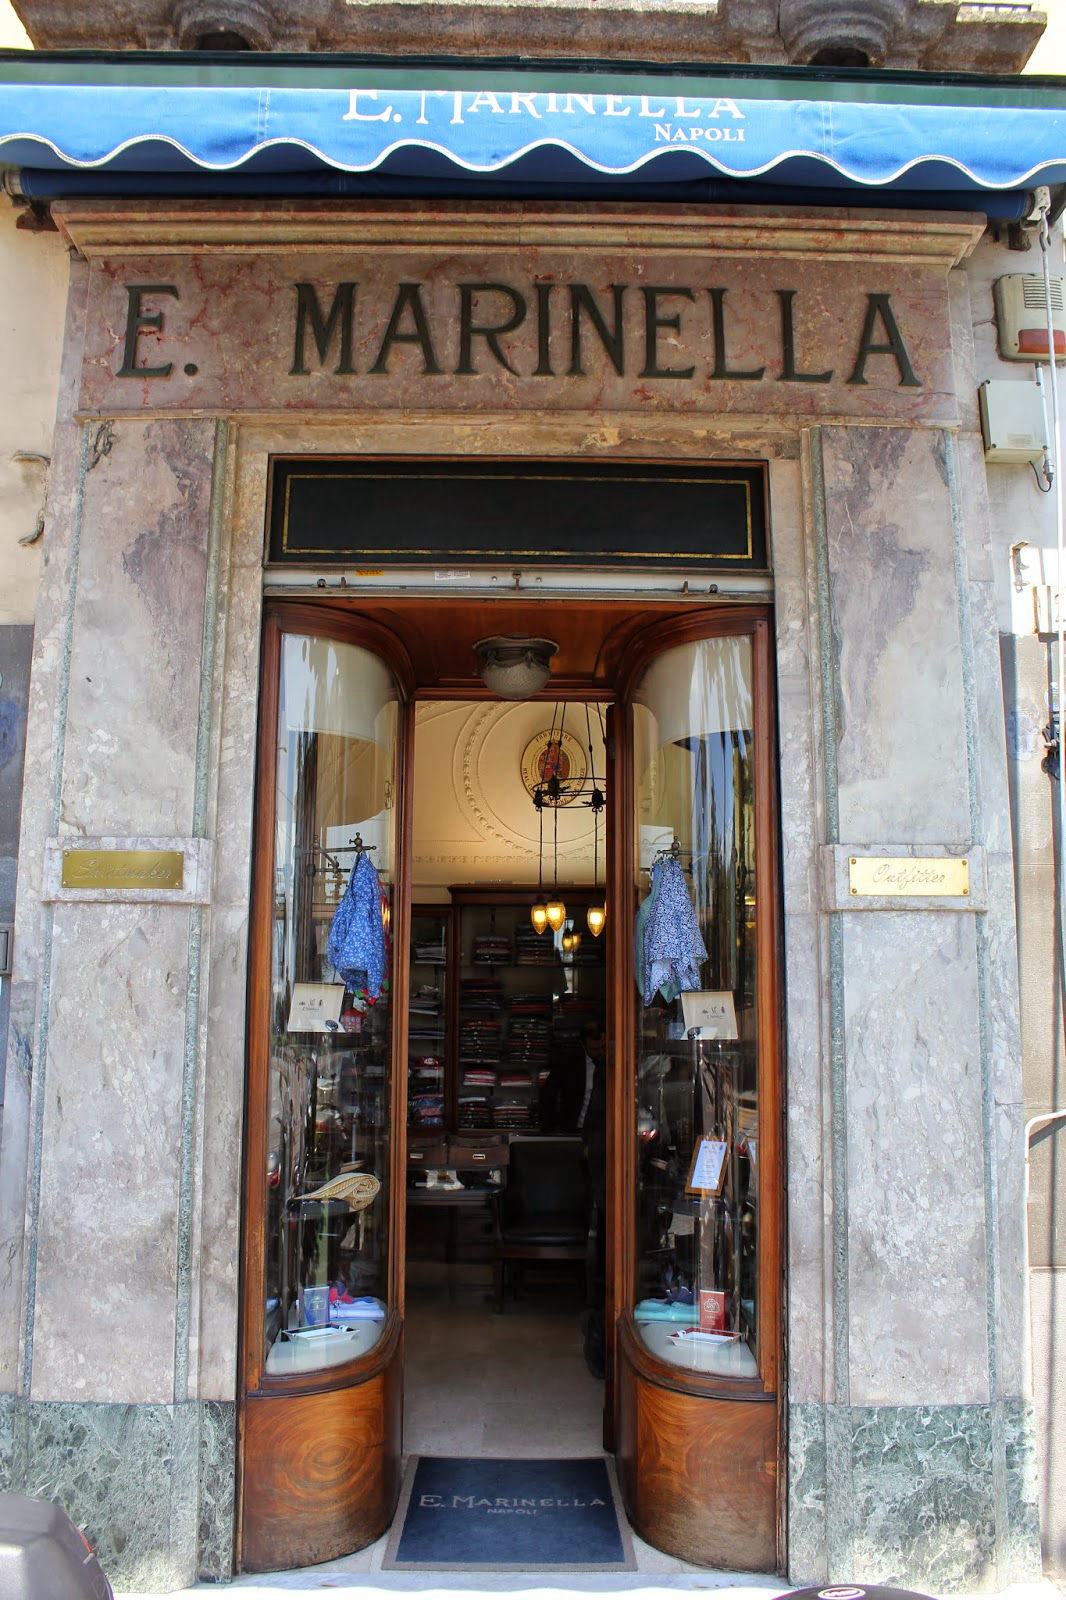 Το κατάστημα της E. Marinella στη Νάπολη